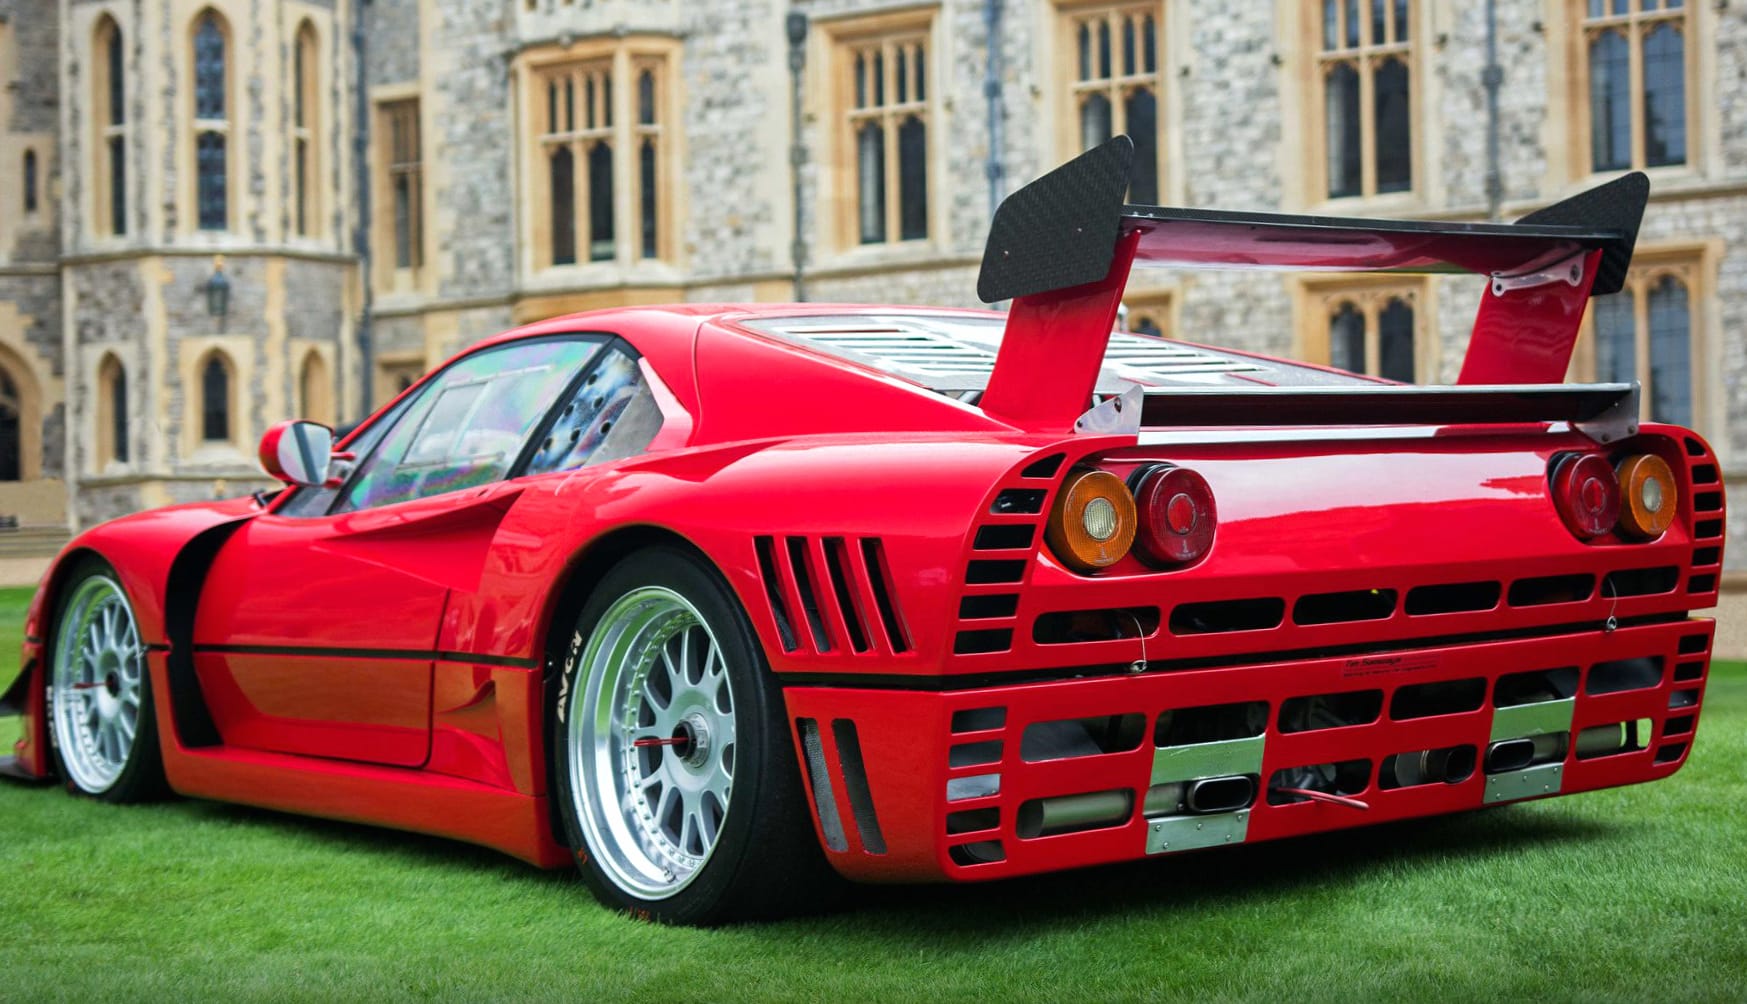 Ferrari GTO Evoluzione at 1280 x 960 size wallpapers HD quality